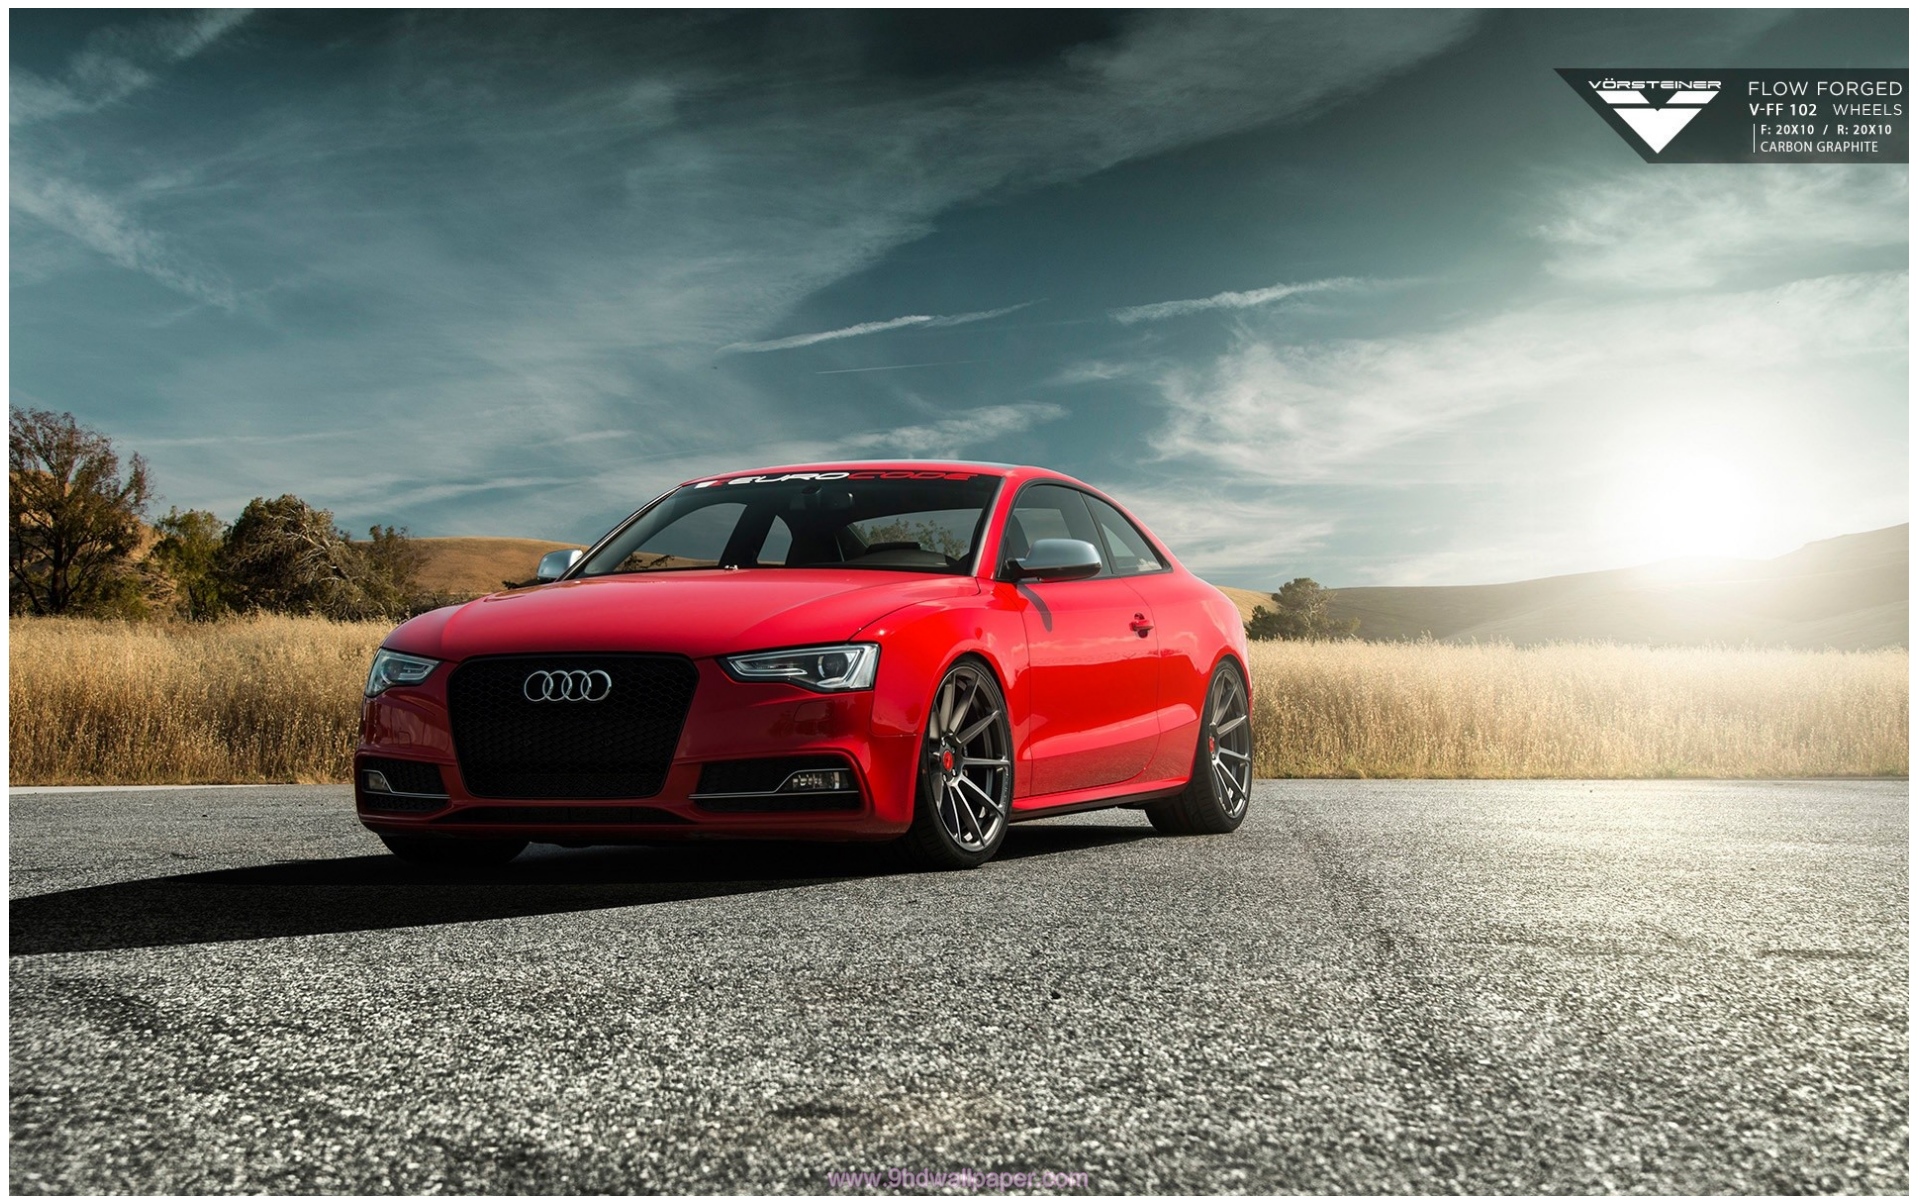 Audi Car Wallpapers Hd Free Download